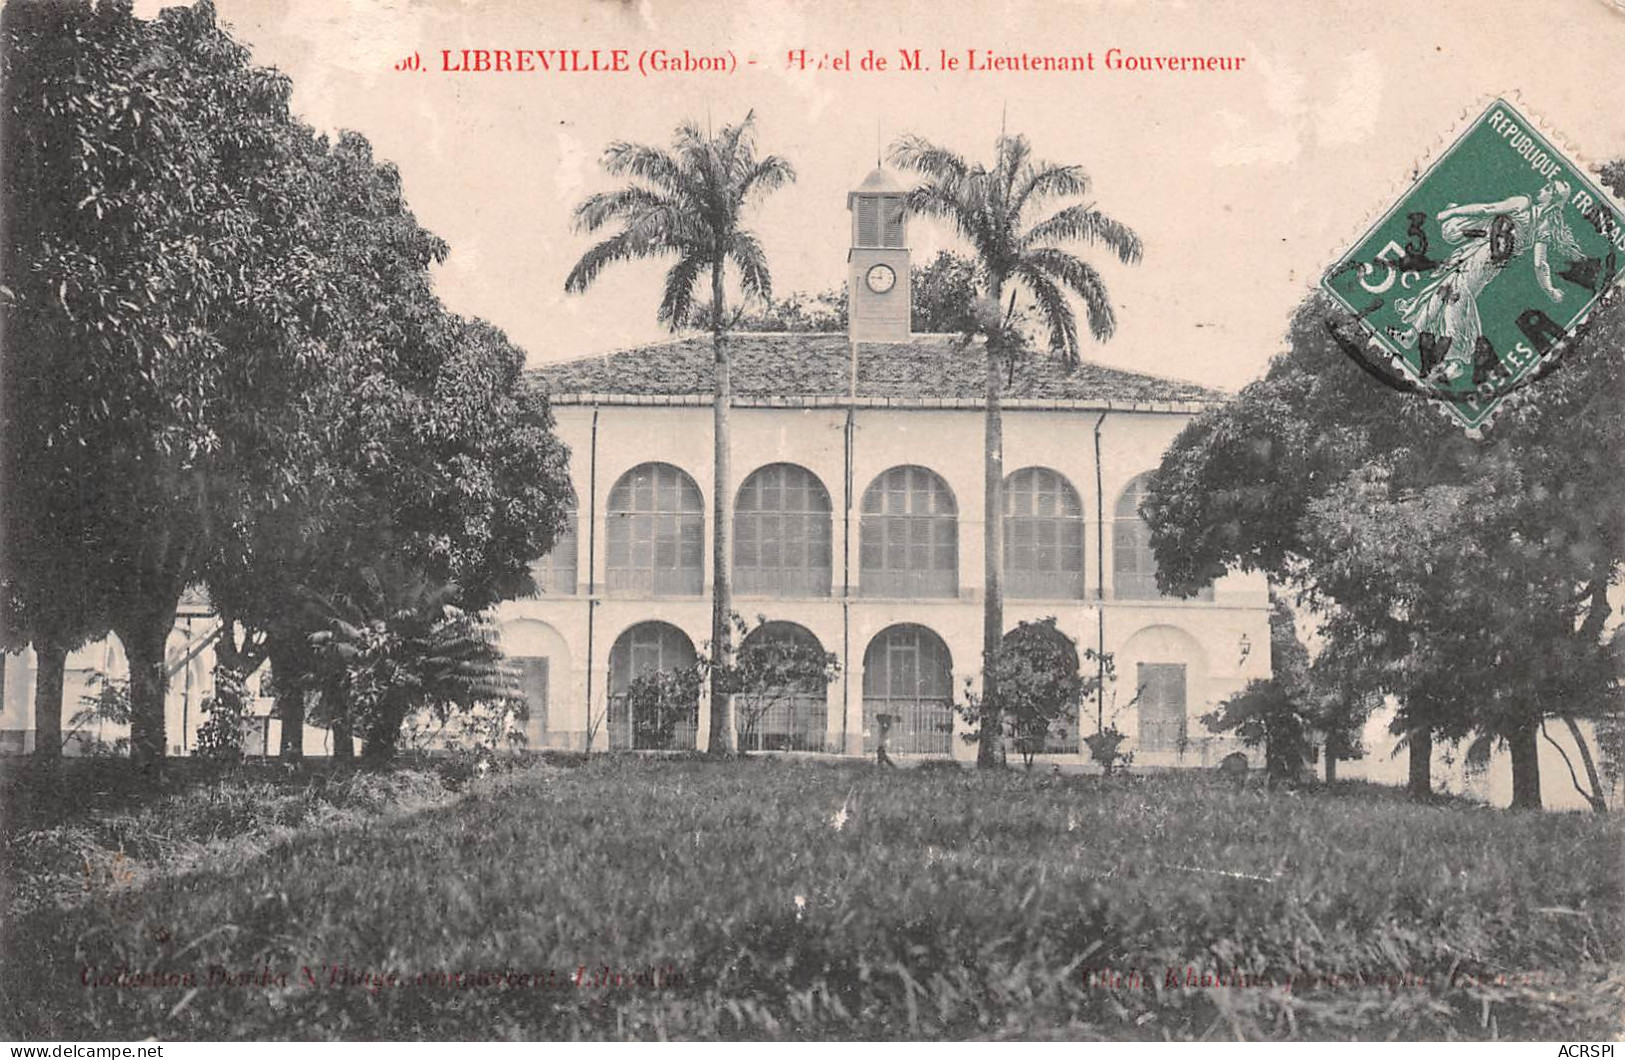 GABON LIBREVILLE  Hotel De Mr Afred MARTINEAU Lieutenant Gouverneur En 1908  Cliché Guillot  (Scan R/V) N° 51 \MP7165 - Gabón